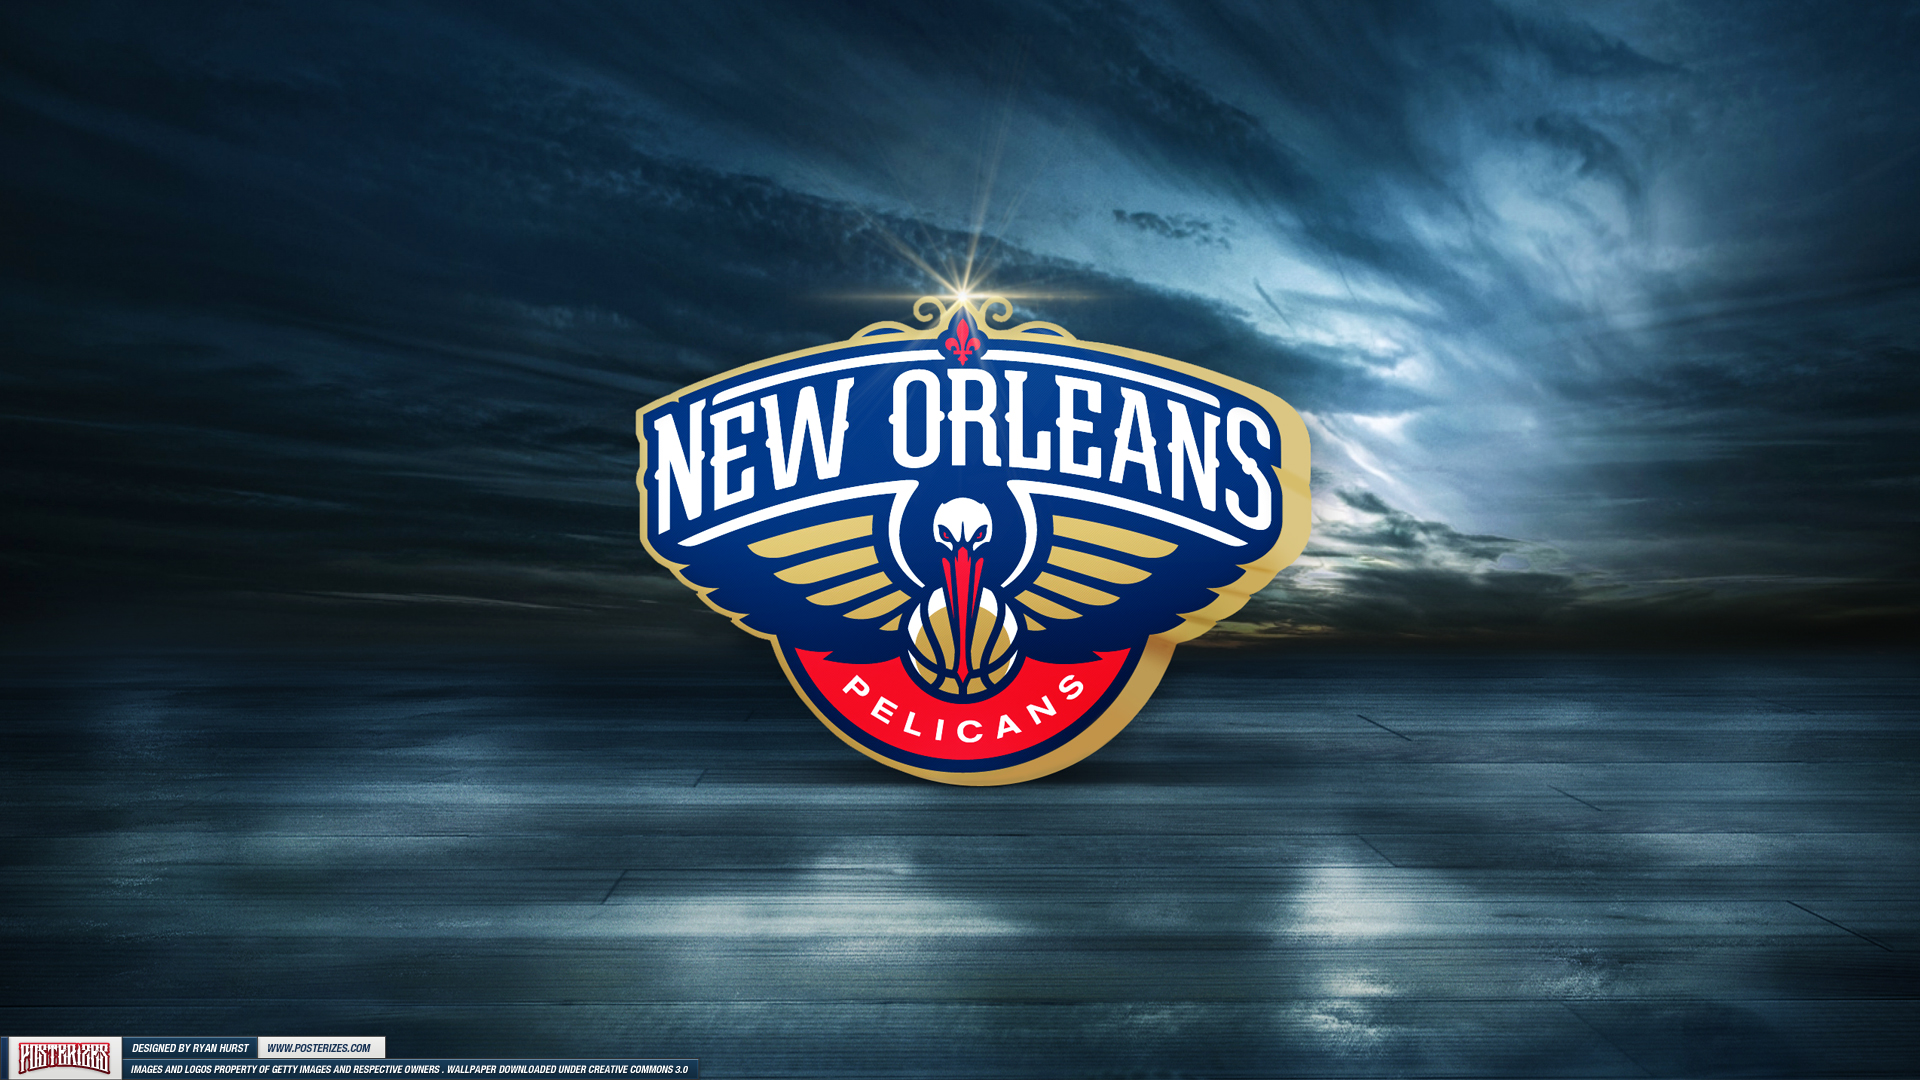 New Orleans Pelicans on Twitter iiiiiiiiiits WALLPAPER WEDNESDAY   httpstcoQbgerMQrNW  Twitter